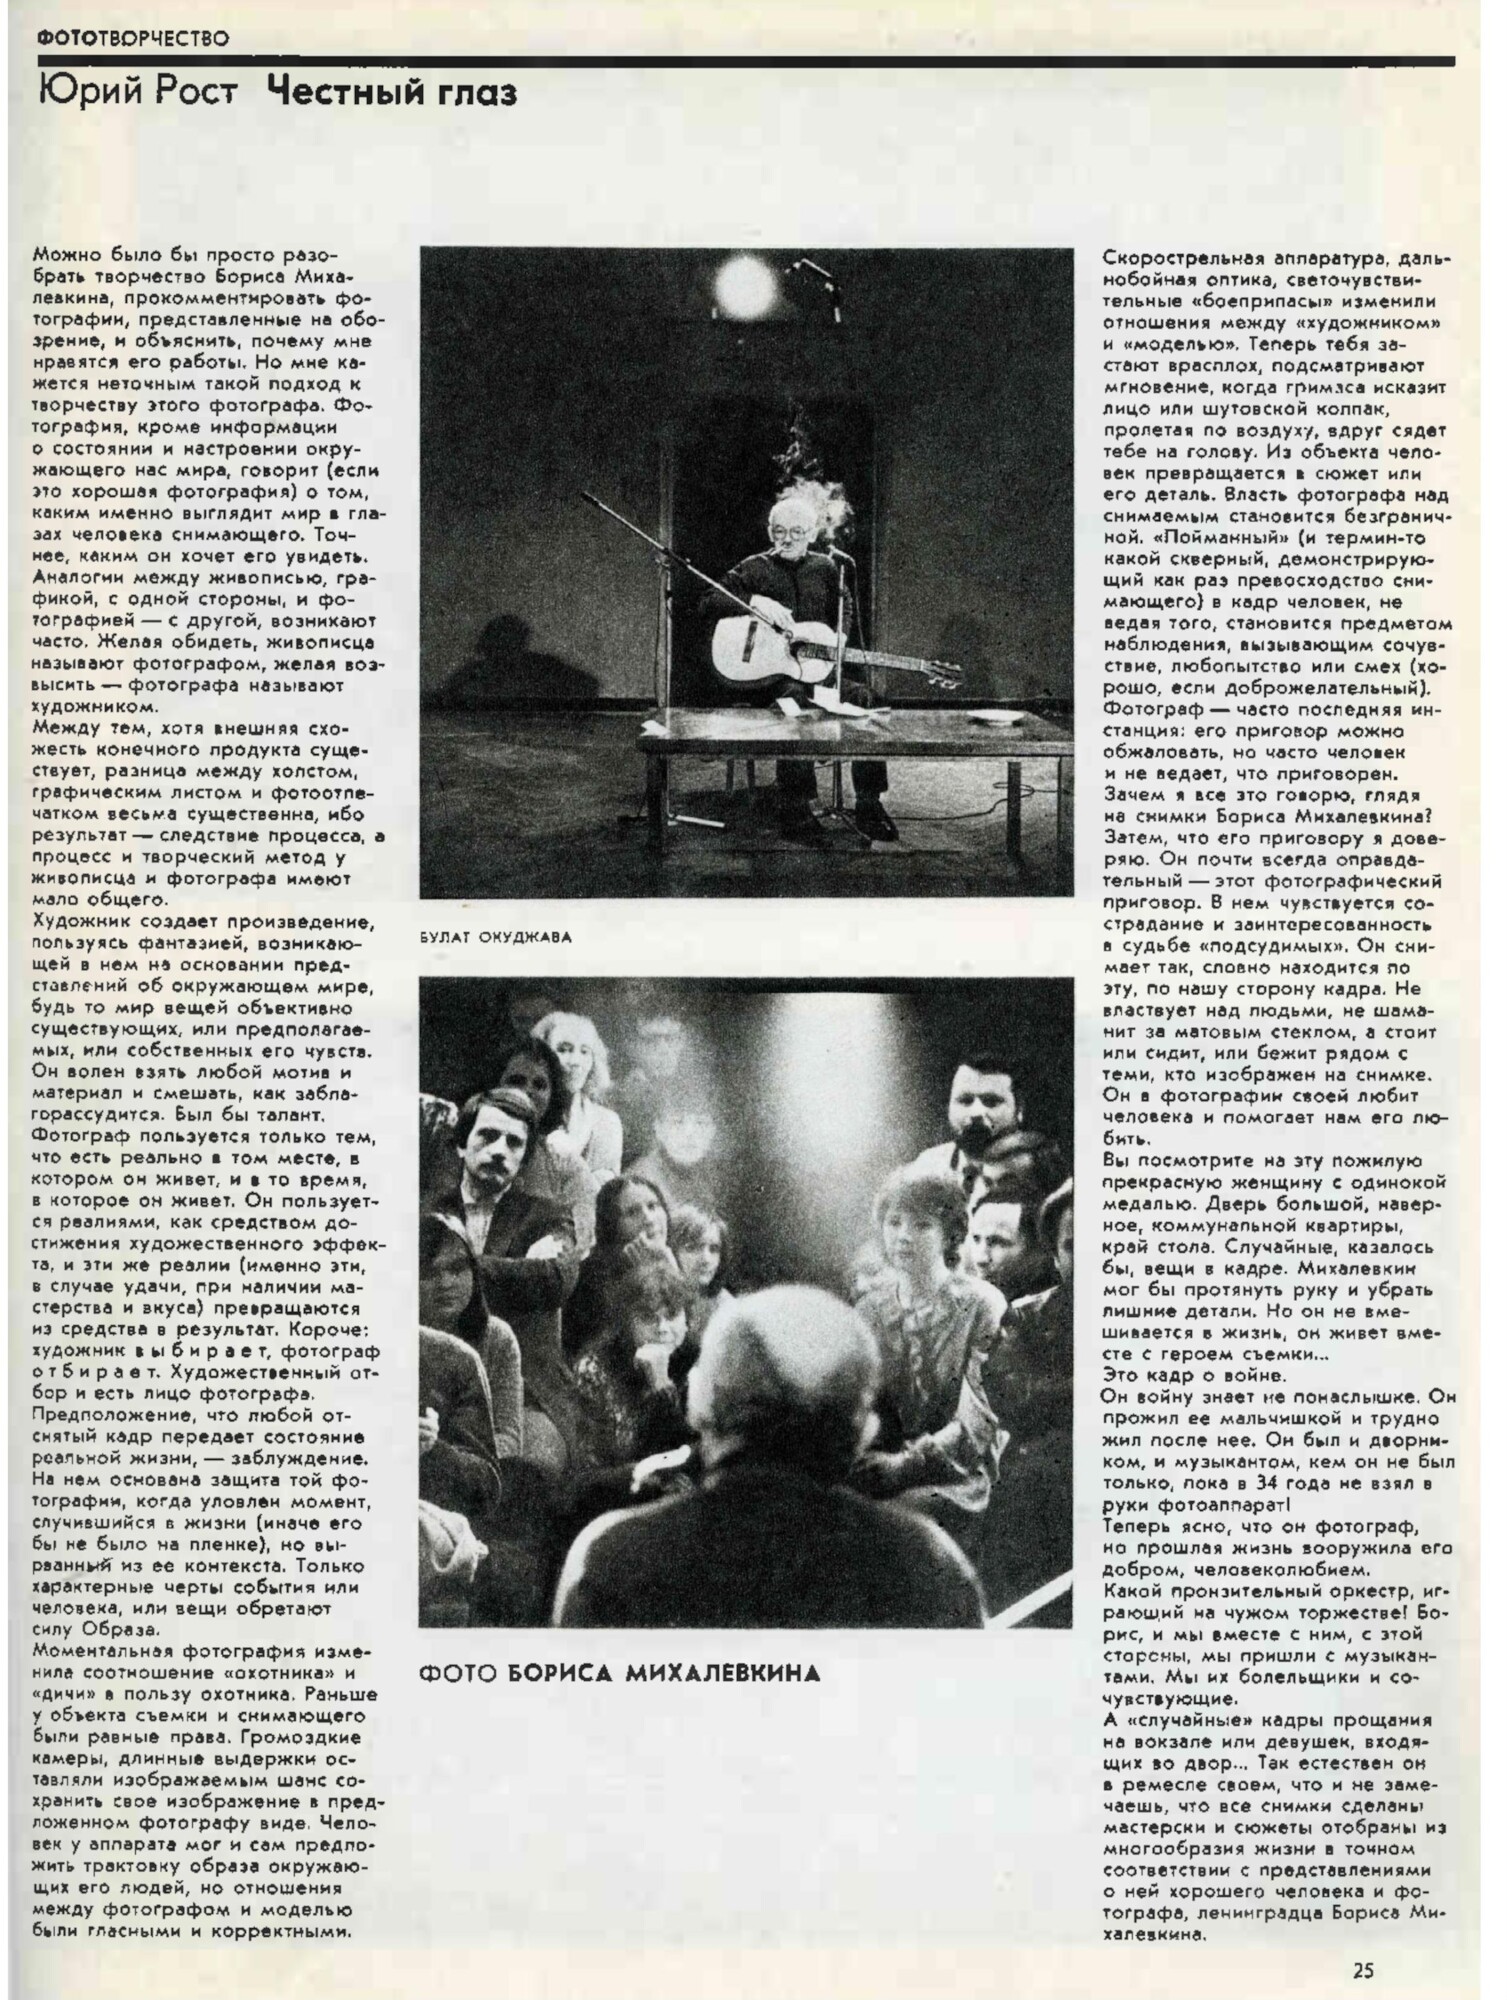 Журнал “Советское фото” 1987, No4. 
 

«Честный глаз»  

Юрий Рост
 